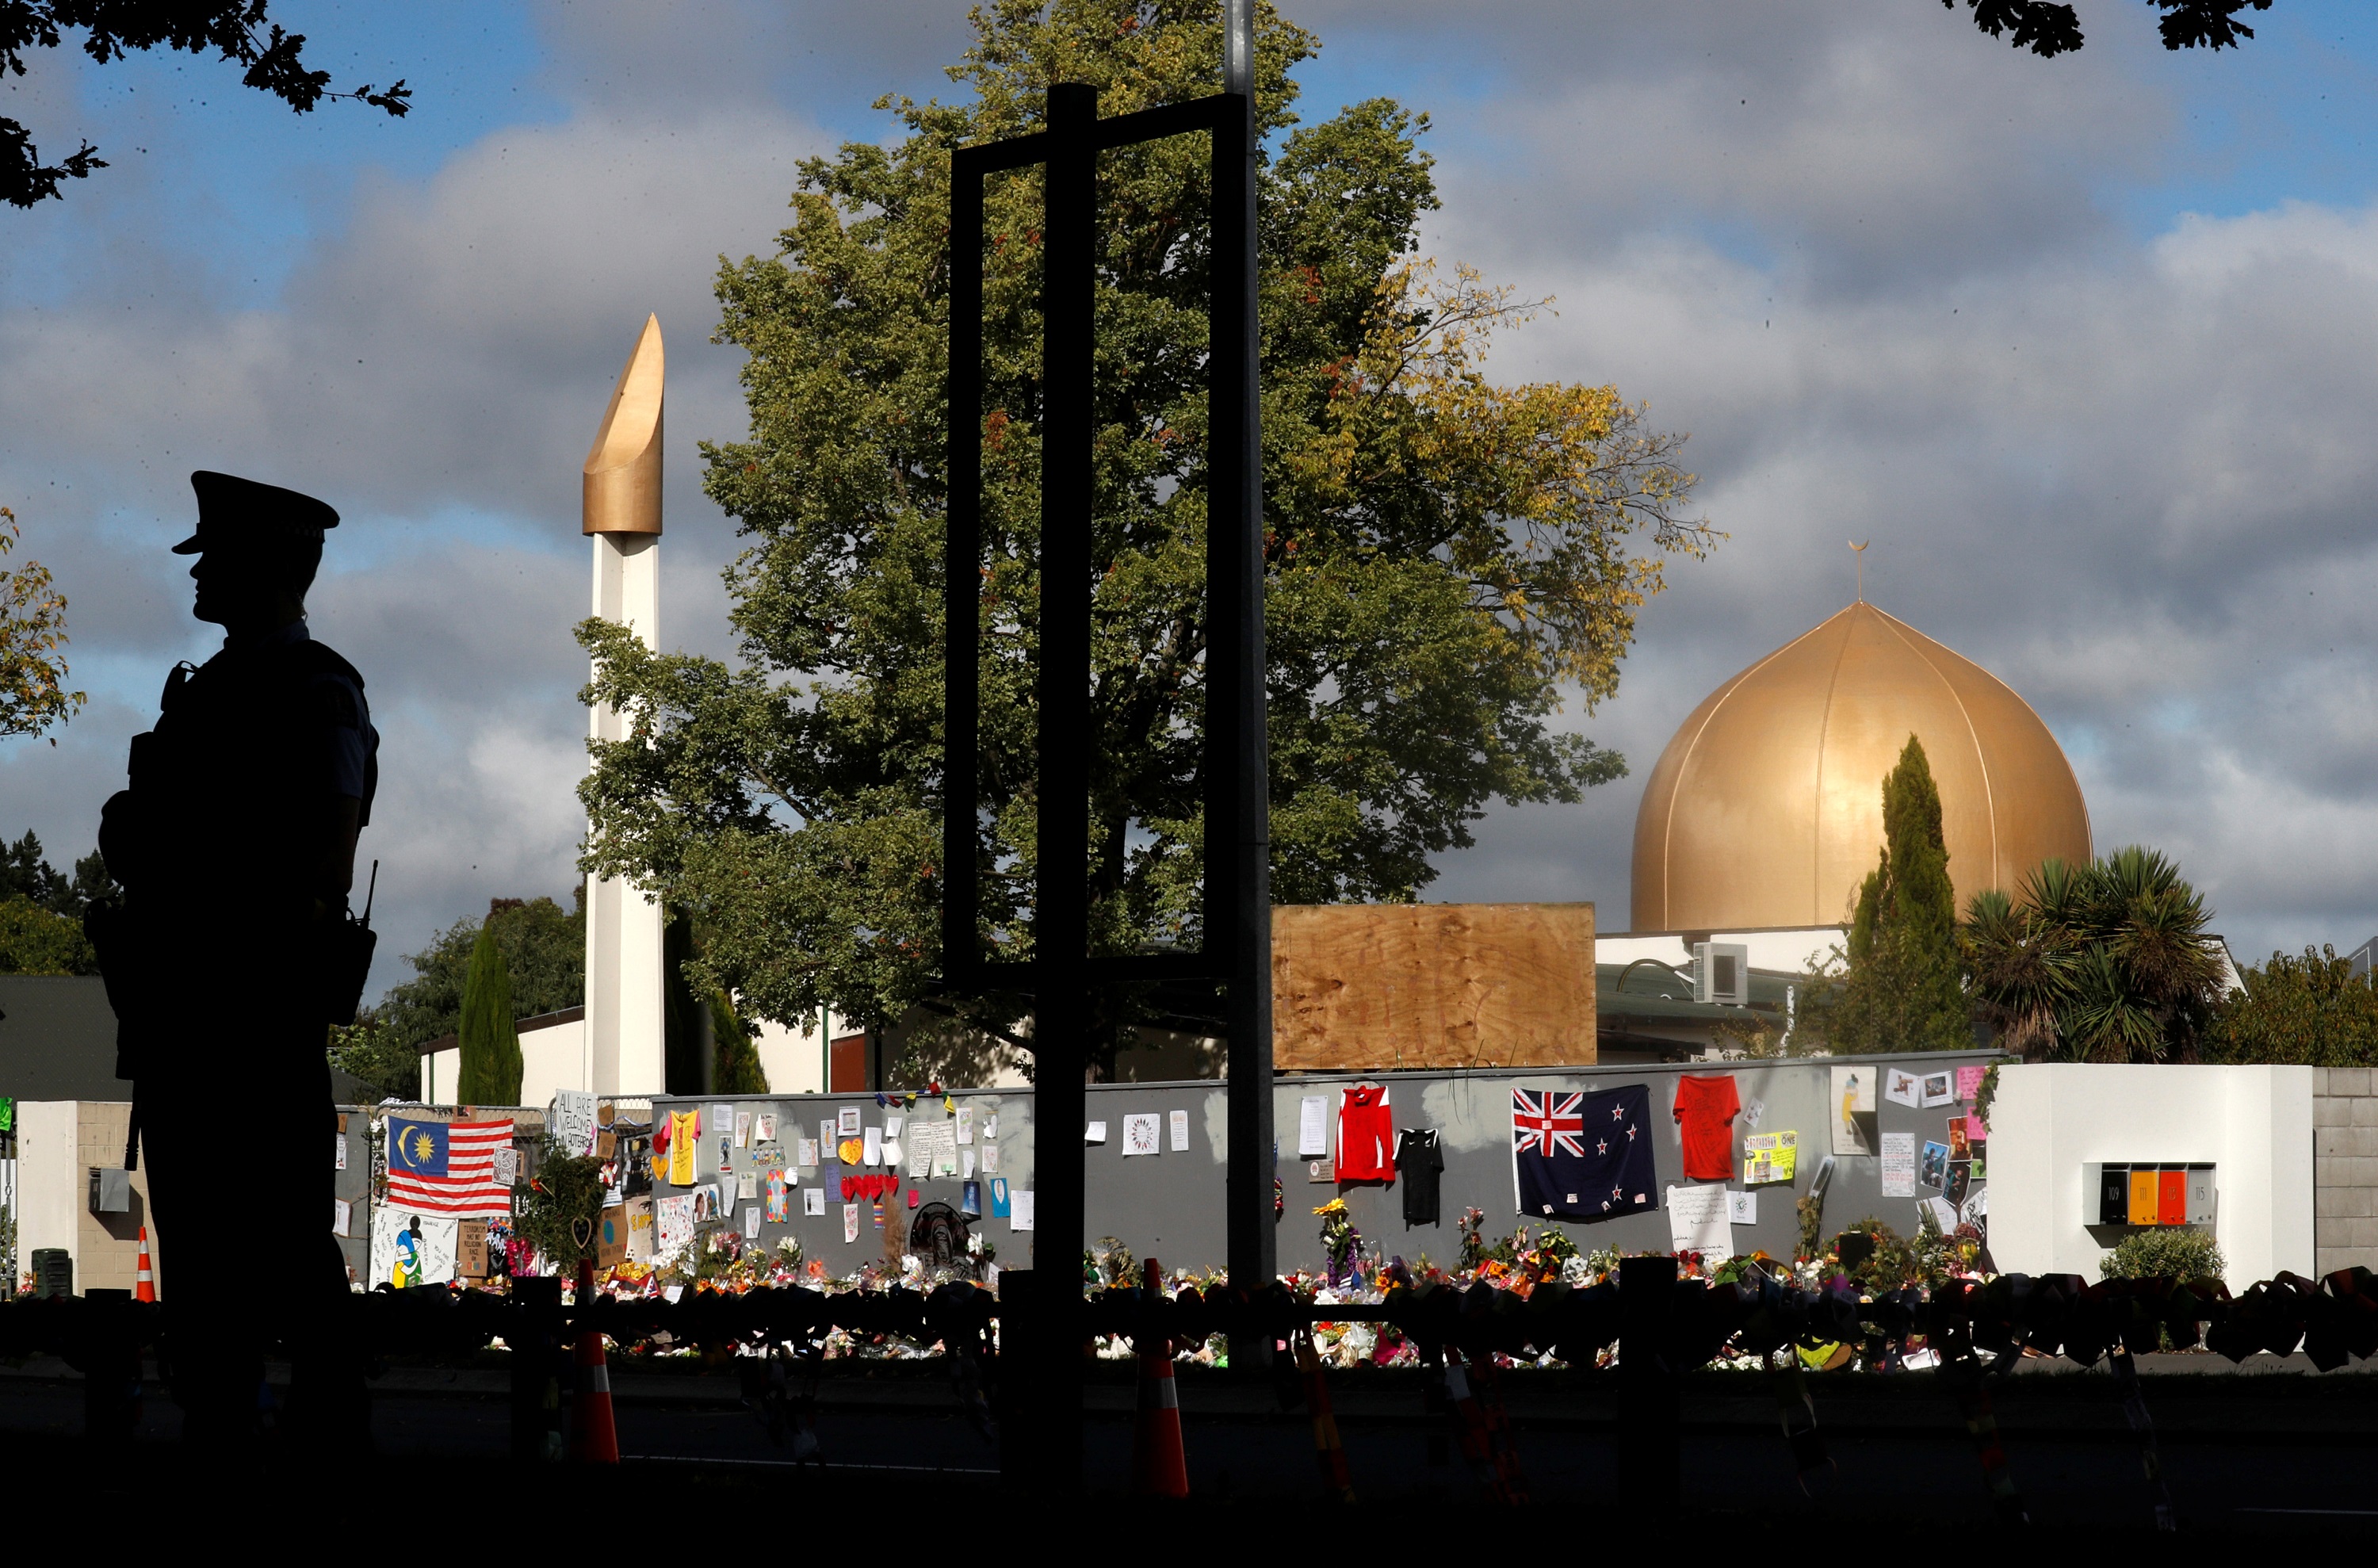 رجل أمن أمام مسجد النور الذي تعرض لاعتداء إرهابي هو ومسجد لينوود في مدينة "كرايست شيرش" شرق نيوزيلندا الأسبوع الماضي. جورج سيلفا/ رويترز